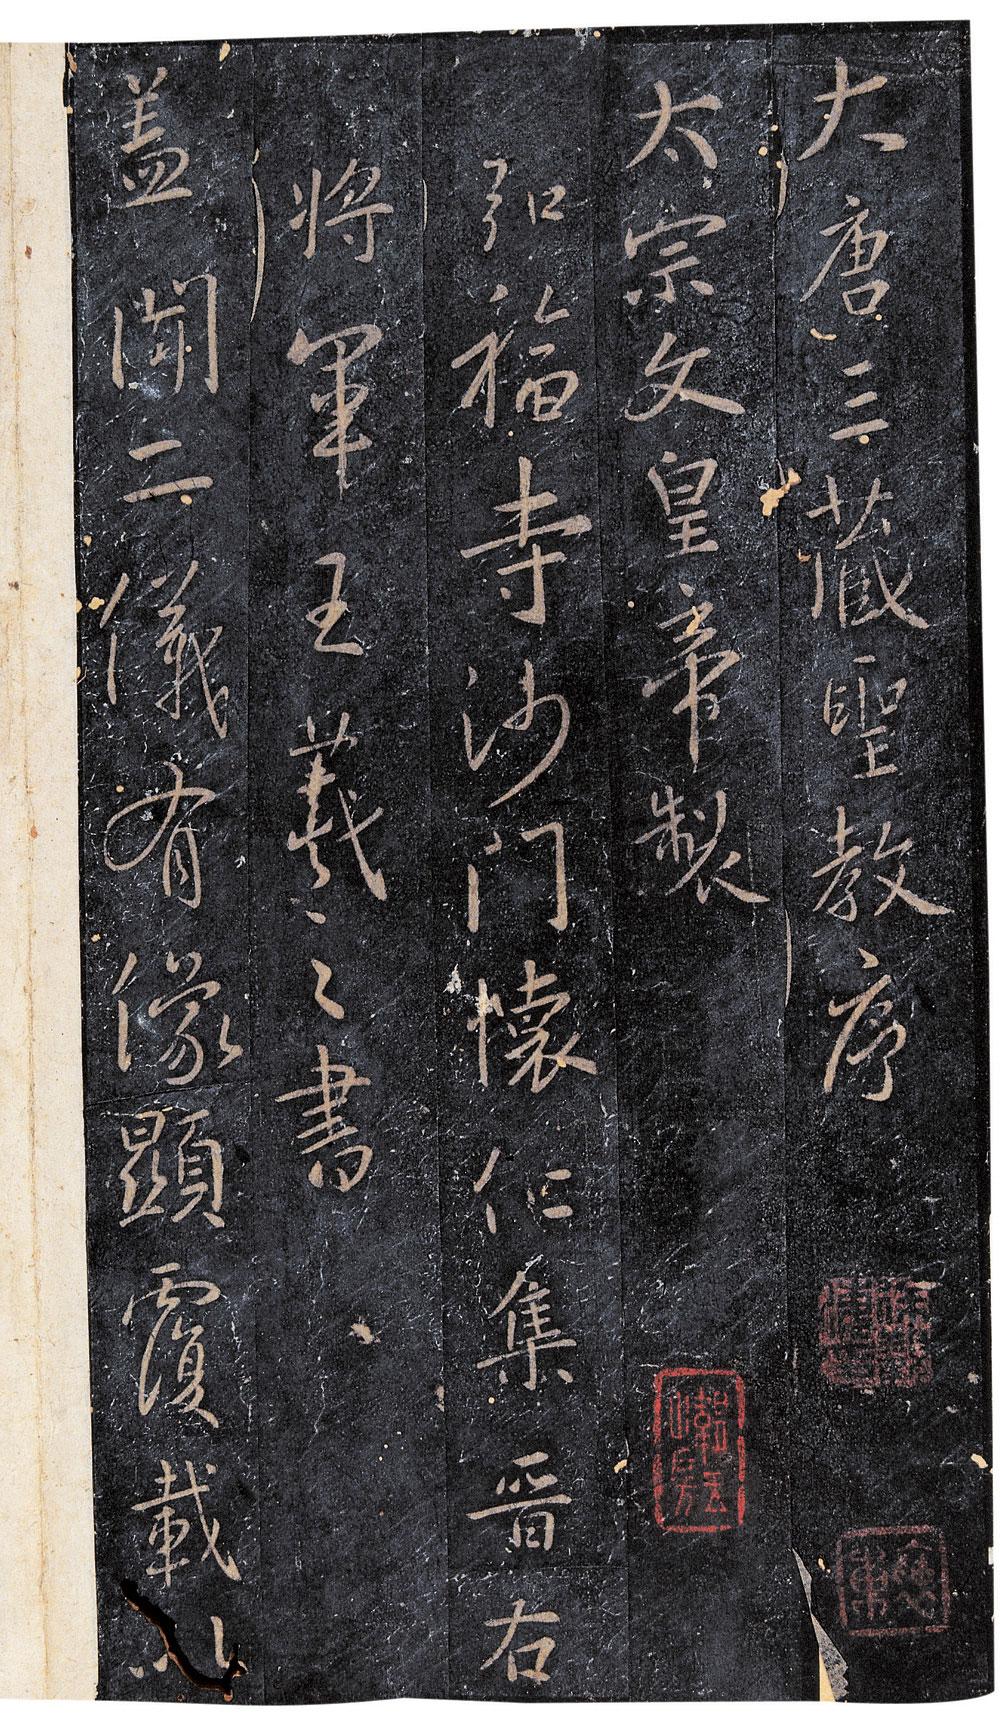 1155 大唐三藏圣教序